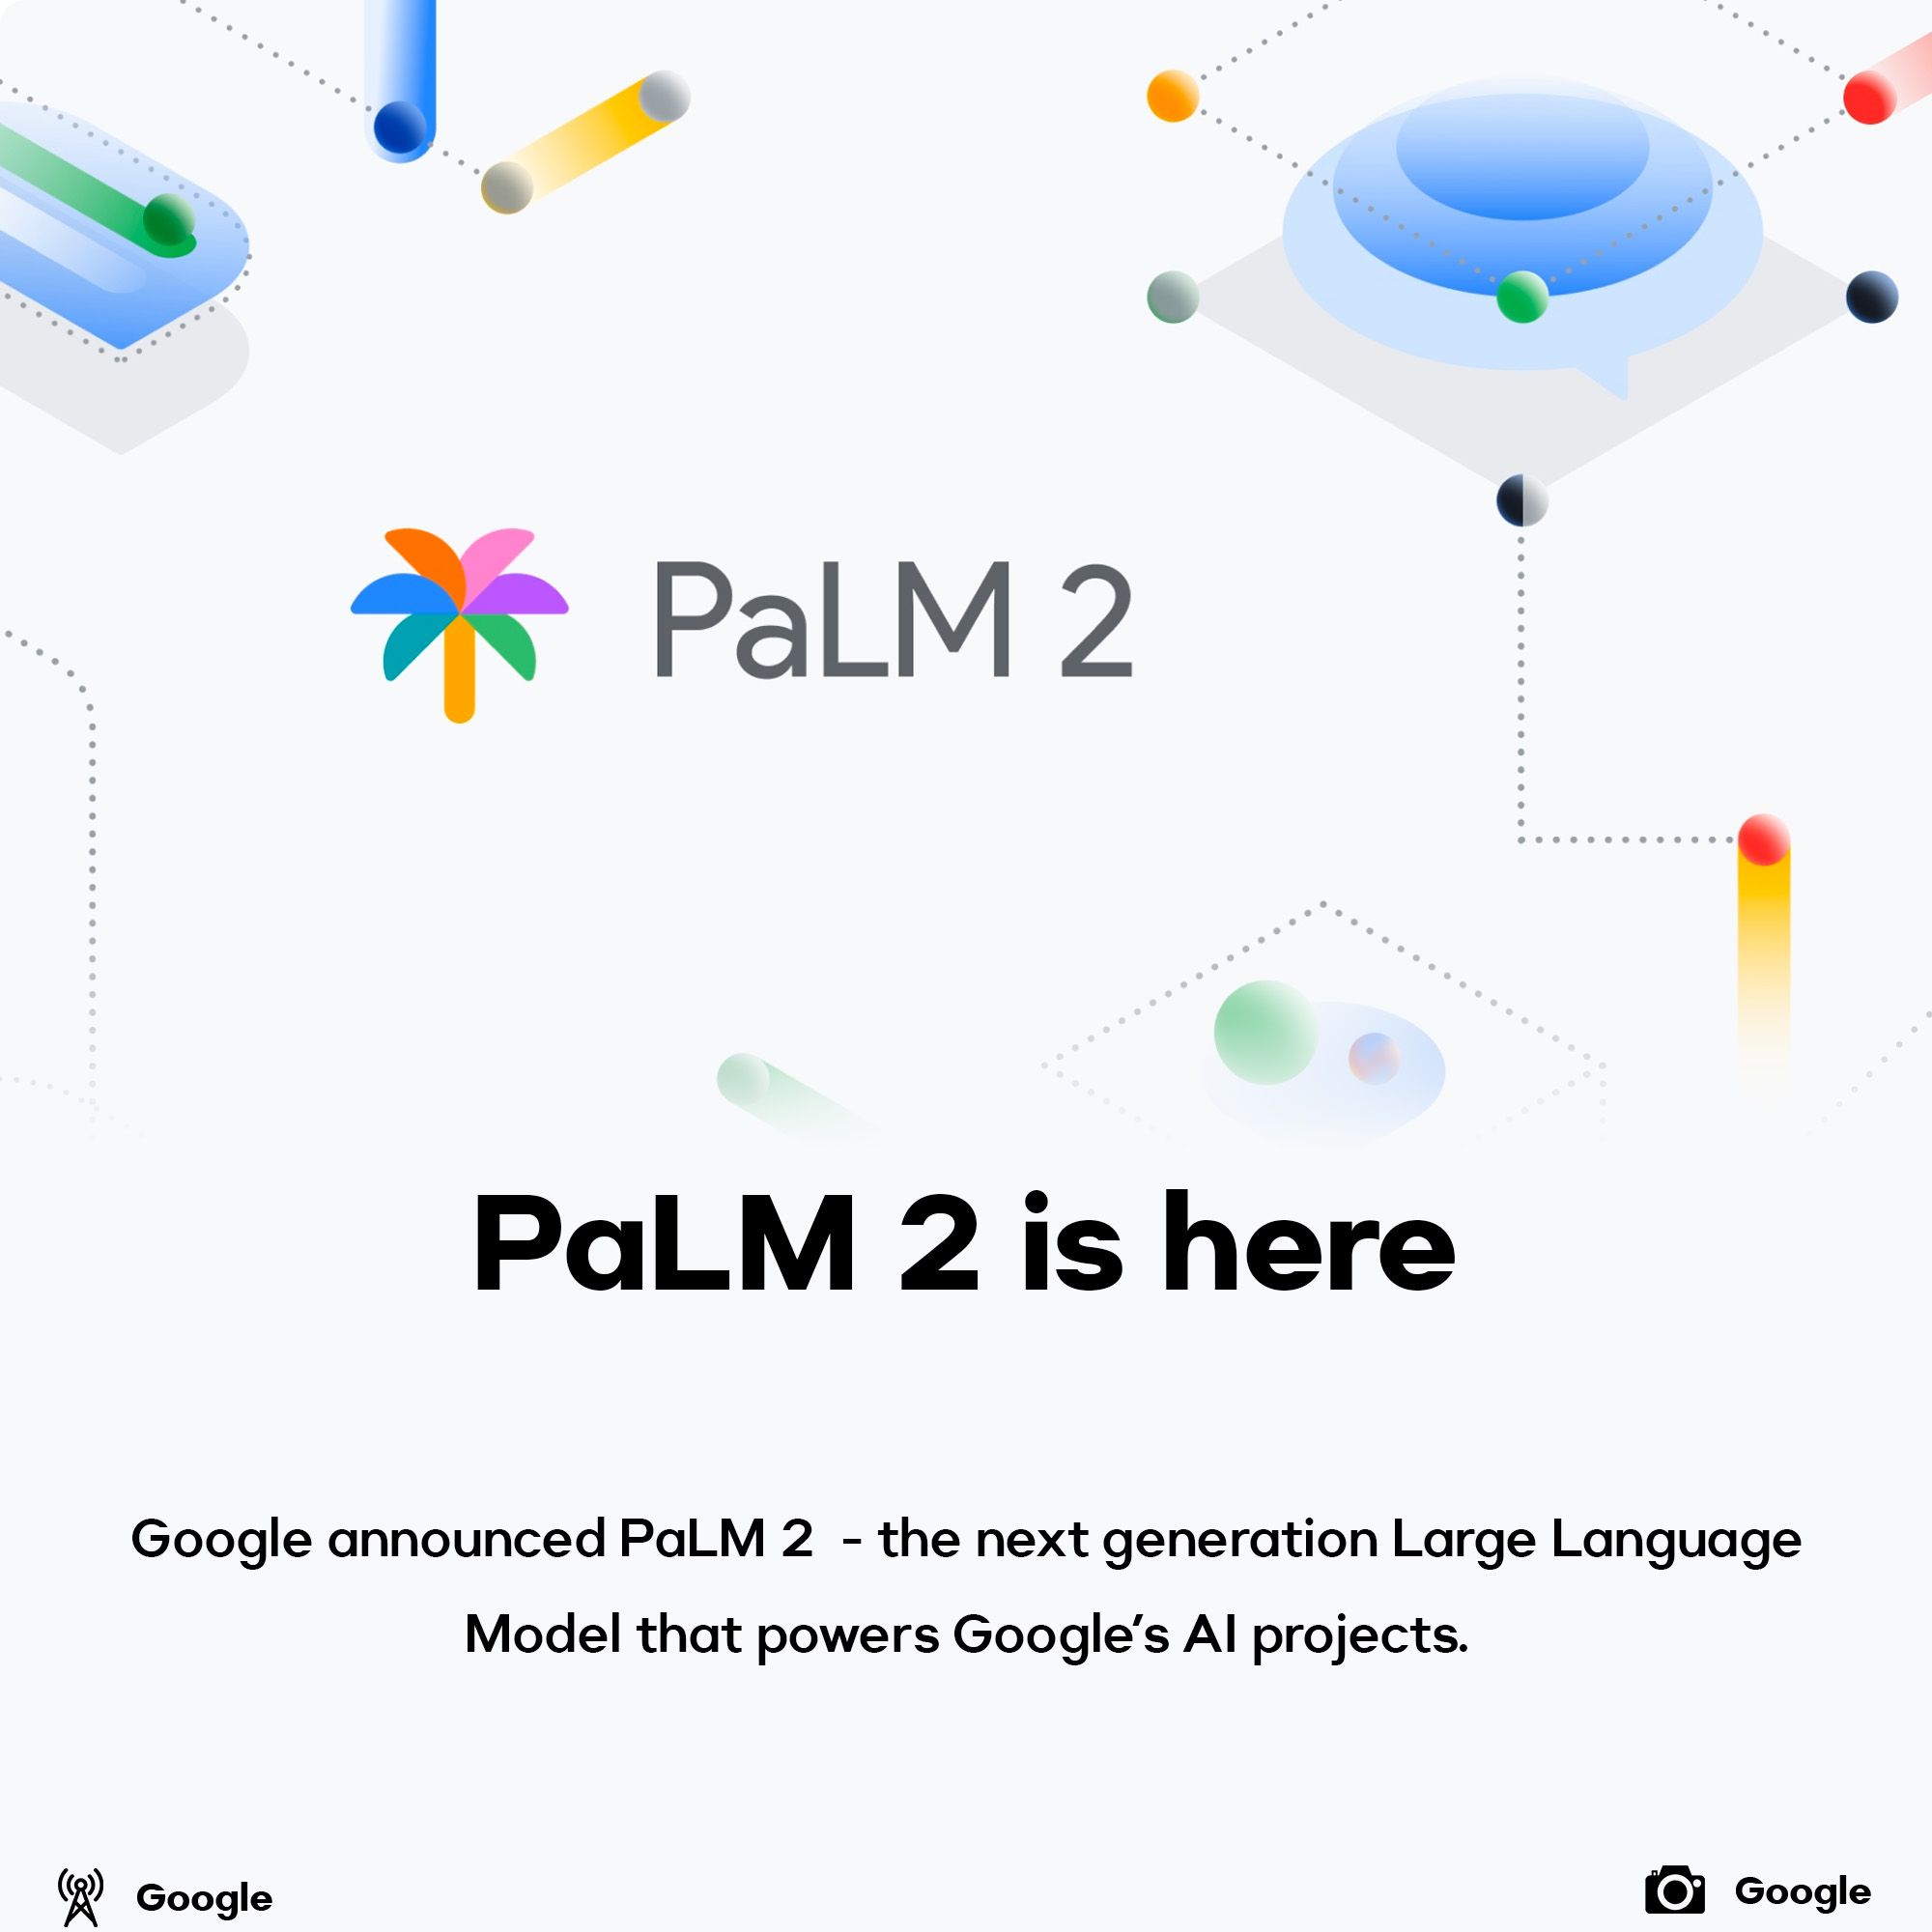 Google announced PaLM2